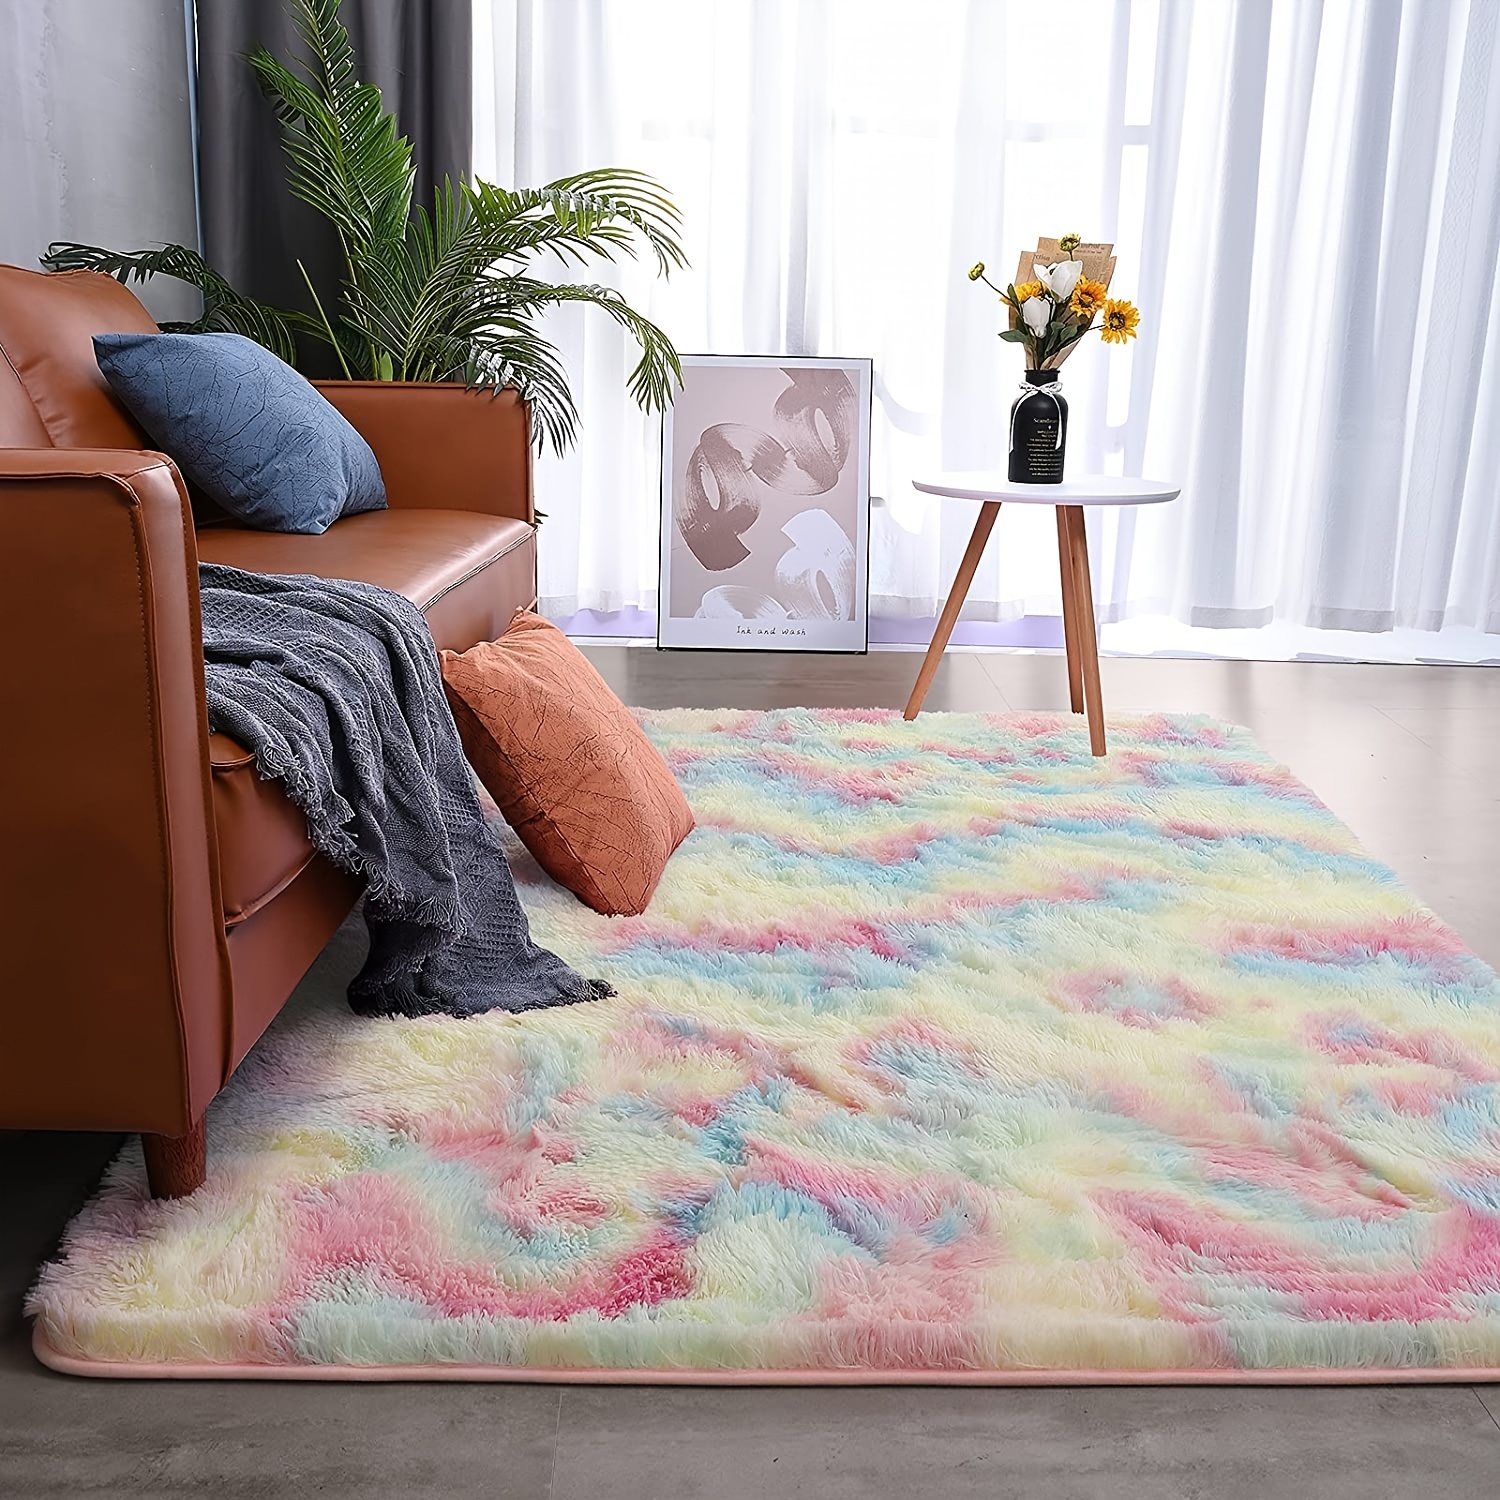 Velvet Carpet For Living Room Fluffy Rug Thicken Carpets Long Soft Floor  Rugs Bed Room Decor Tie Dyeing Plush Kids Room Mat Fz51-3